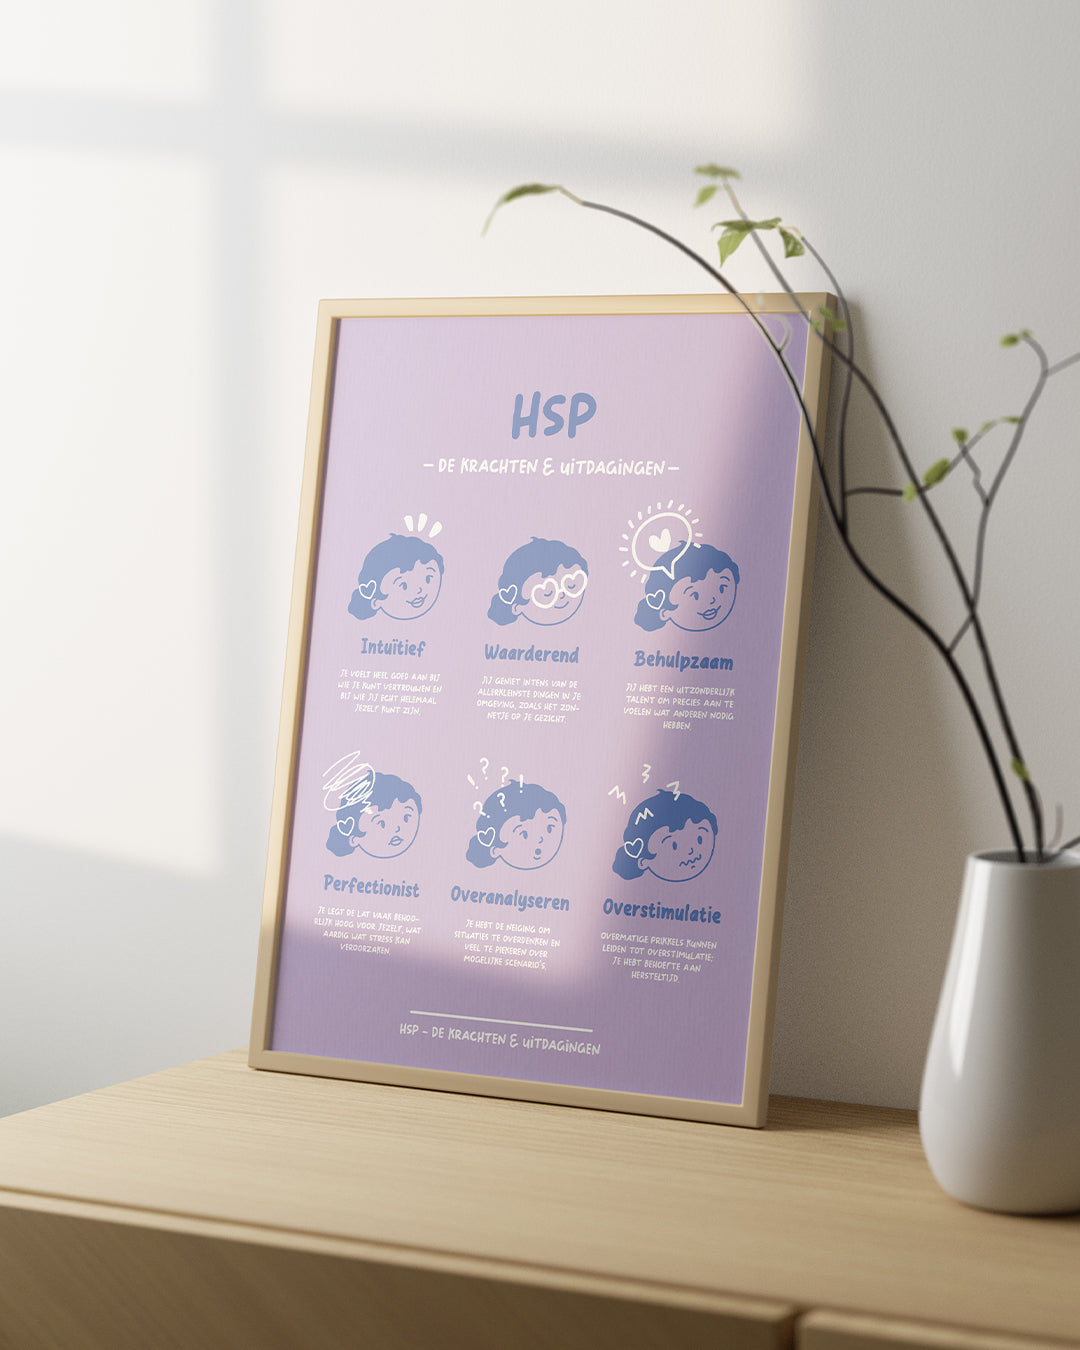 HSP (Hoogsensitiviteit) - A4 Print: de Krachten & Uitdagingen